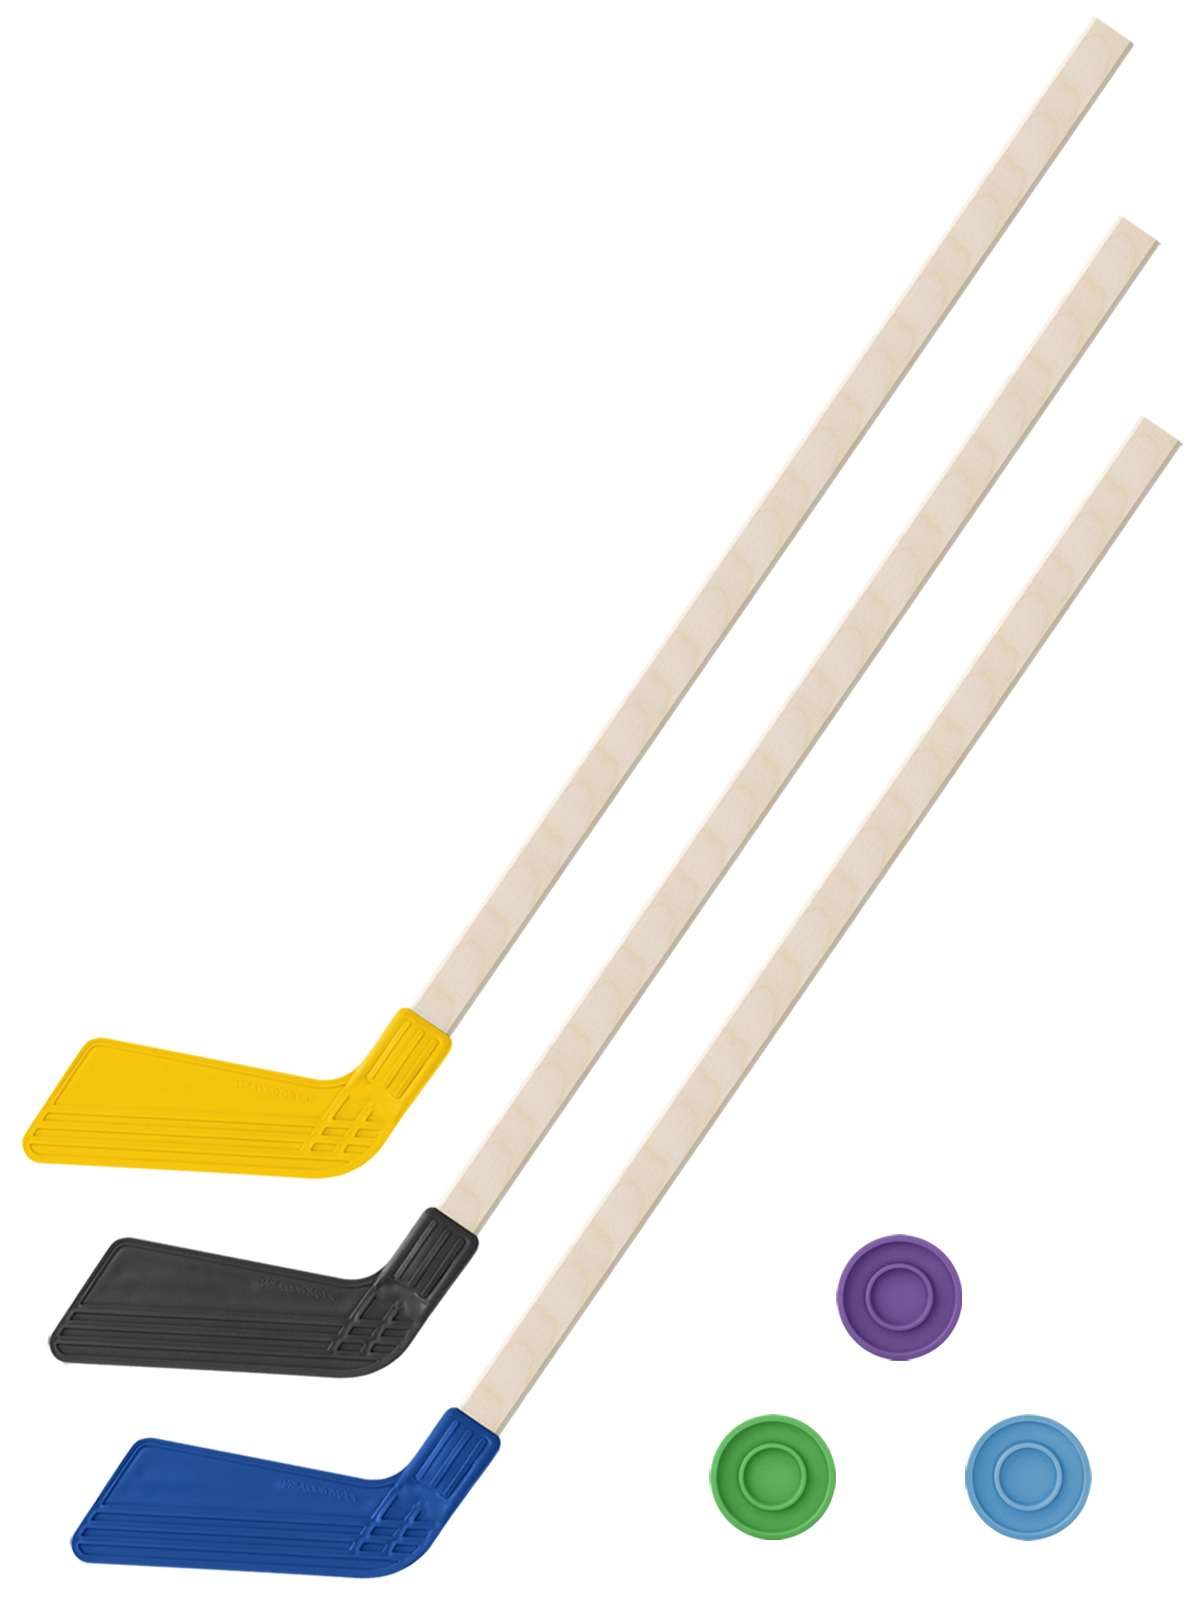 Детский хоккейный набор Задира-плюс 3 в 1 Клюшка хоккейная 80см (жёл,черн,син) + 3 шайбы клюшка флорбольная acito moooo 33 green 80 round левый